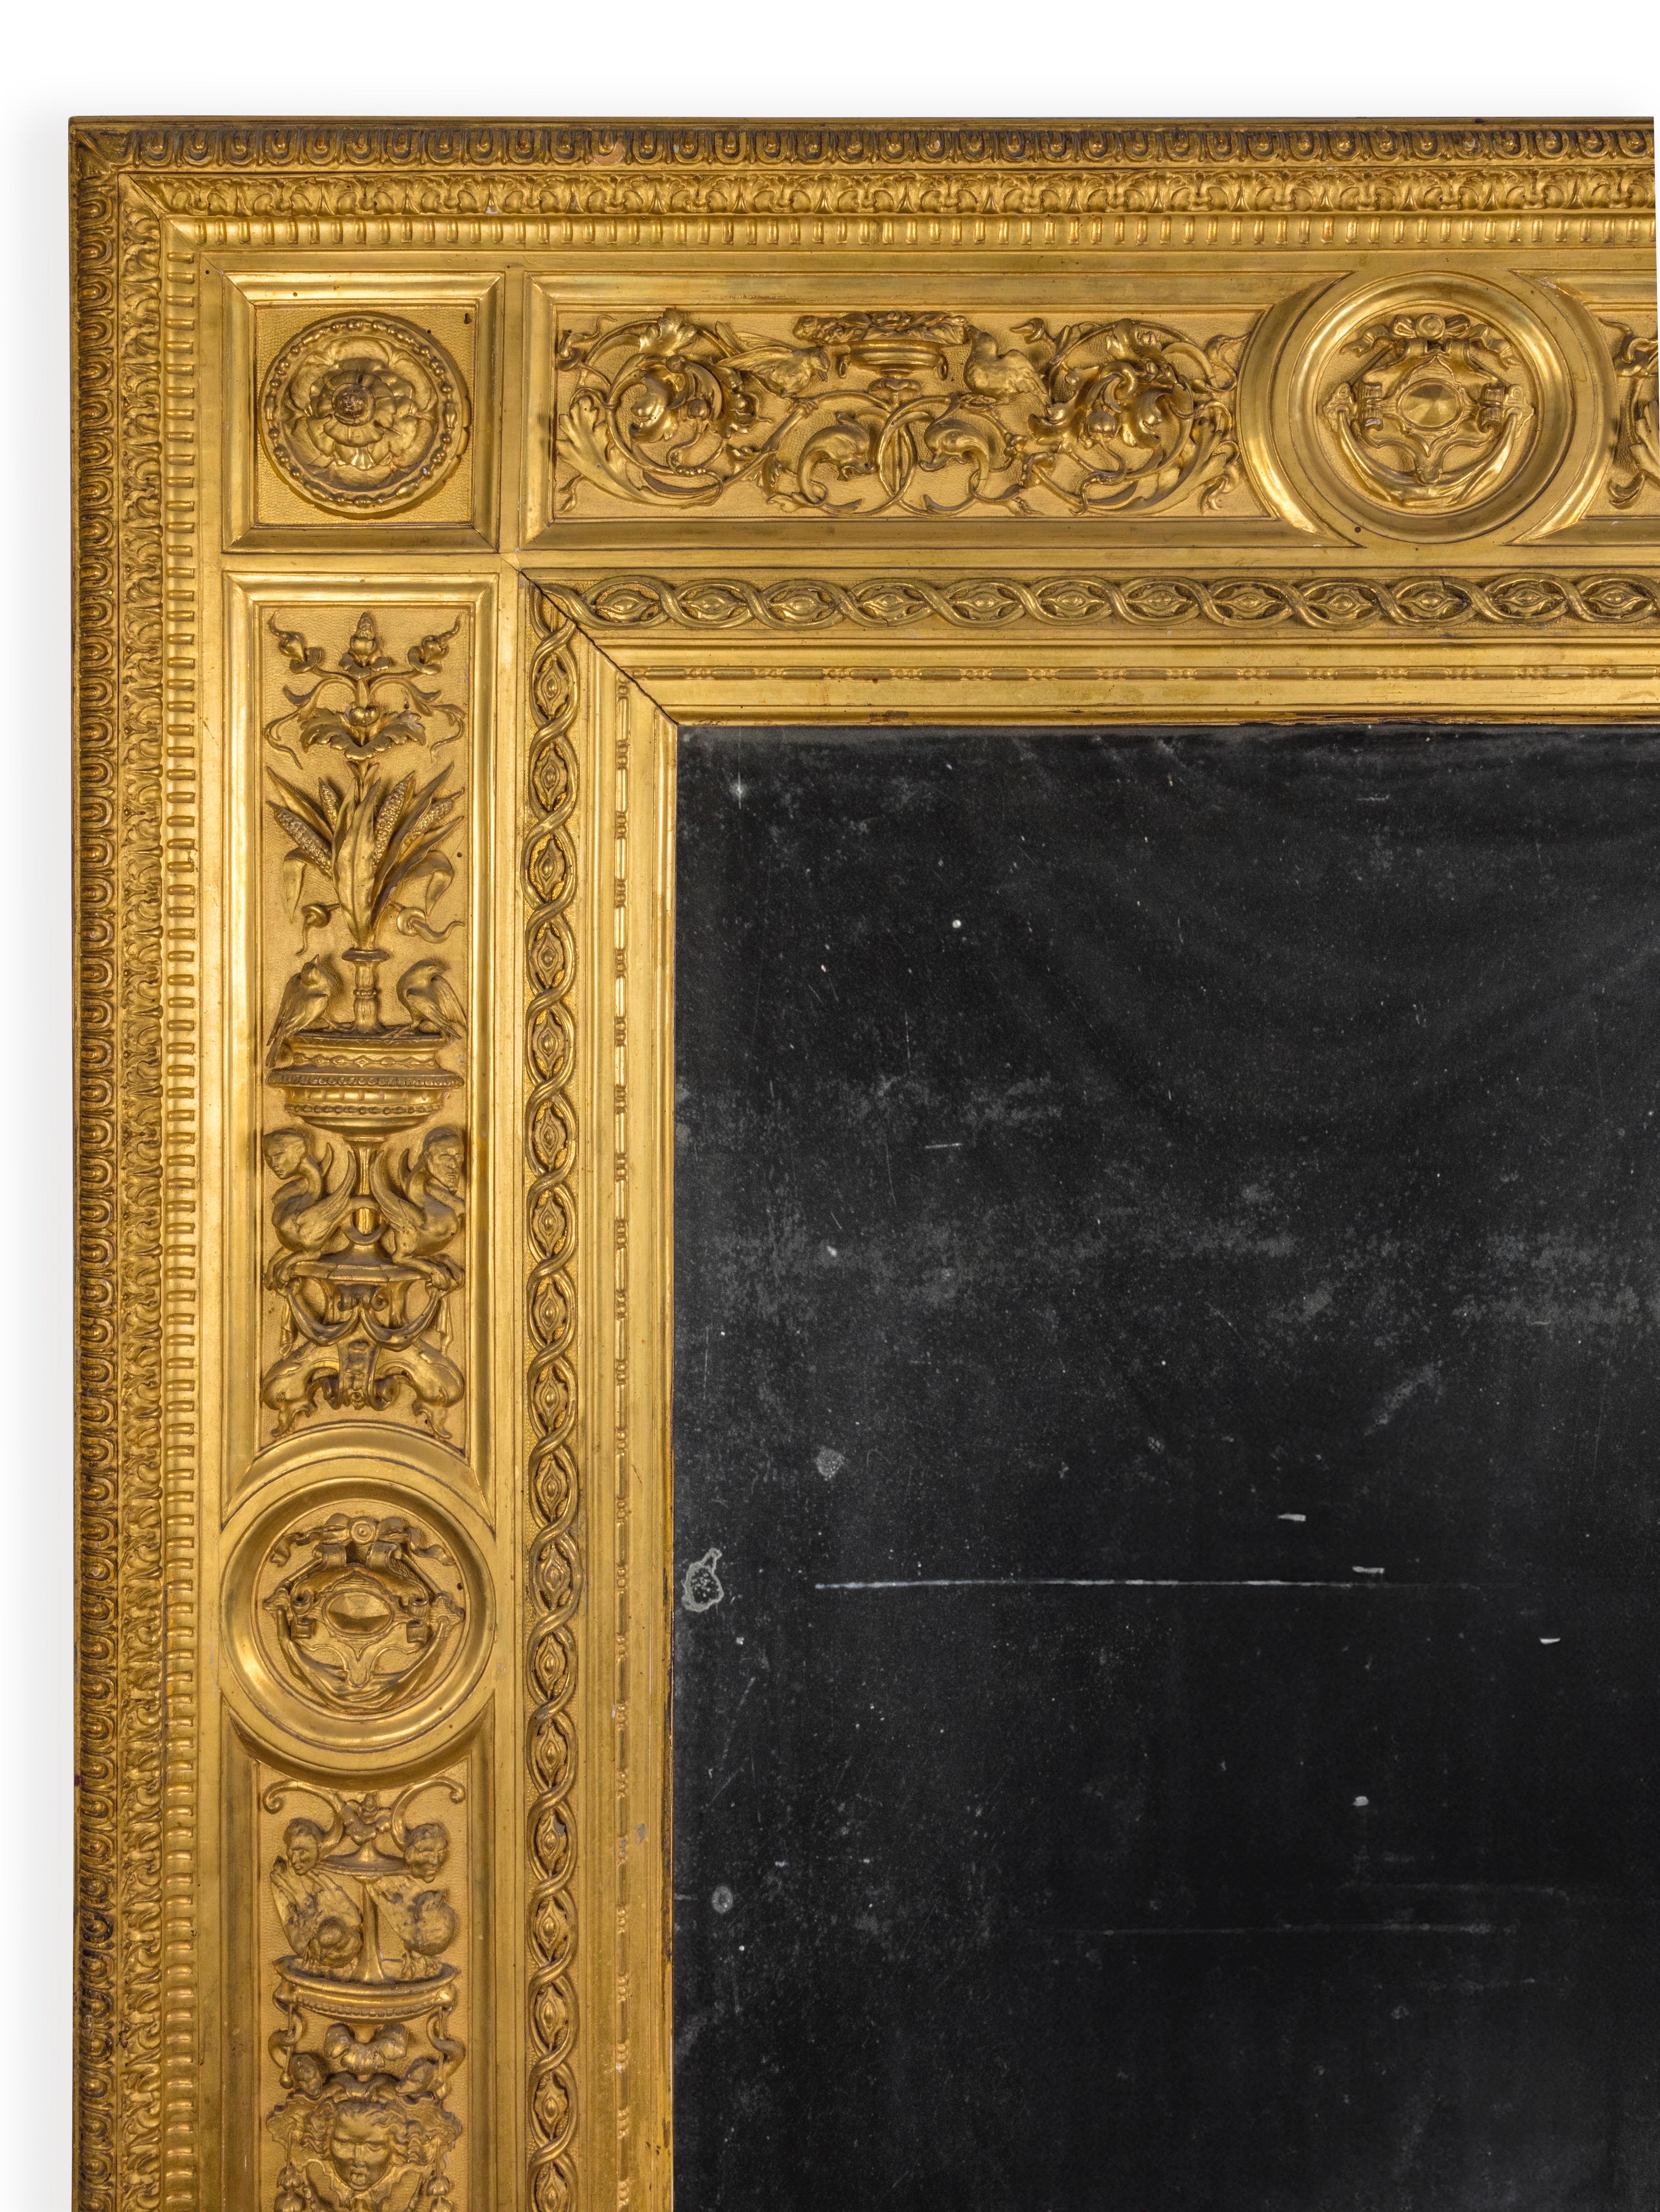 Italienischer Rahmen, Renaissance-Revival aus der zweiten Hälfte des 19. Florentine, geschnitztes und vergoldetes Holz.  
Präsentiert mit einem Quecksilberspiegel aus dem 19. 
Die Feinheit der Skulptur kann Luigi Frullini (1839-1897) zugeschrieben